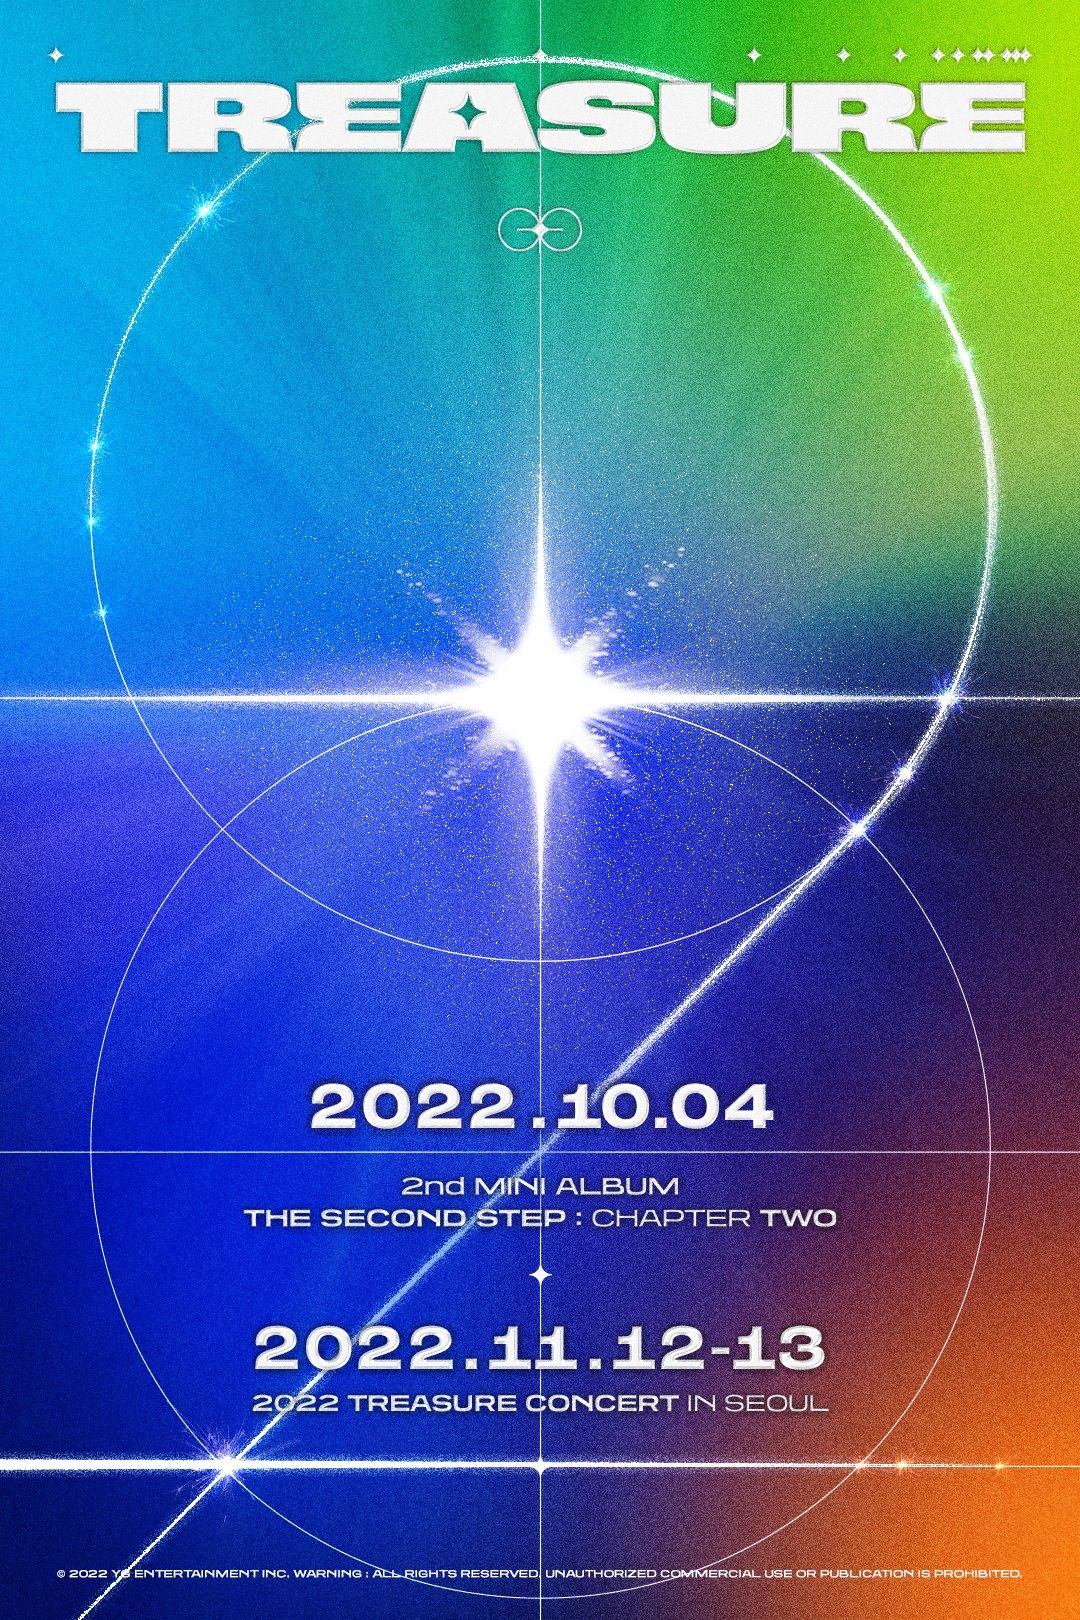 Poster được YG đăng tải với thông báo lịch trình comeback và concert của TREASURE trong tháng 10,11. Ảnh: SOOMPI